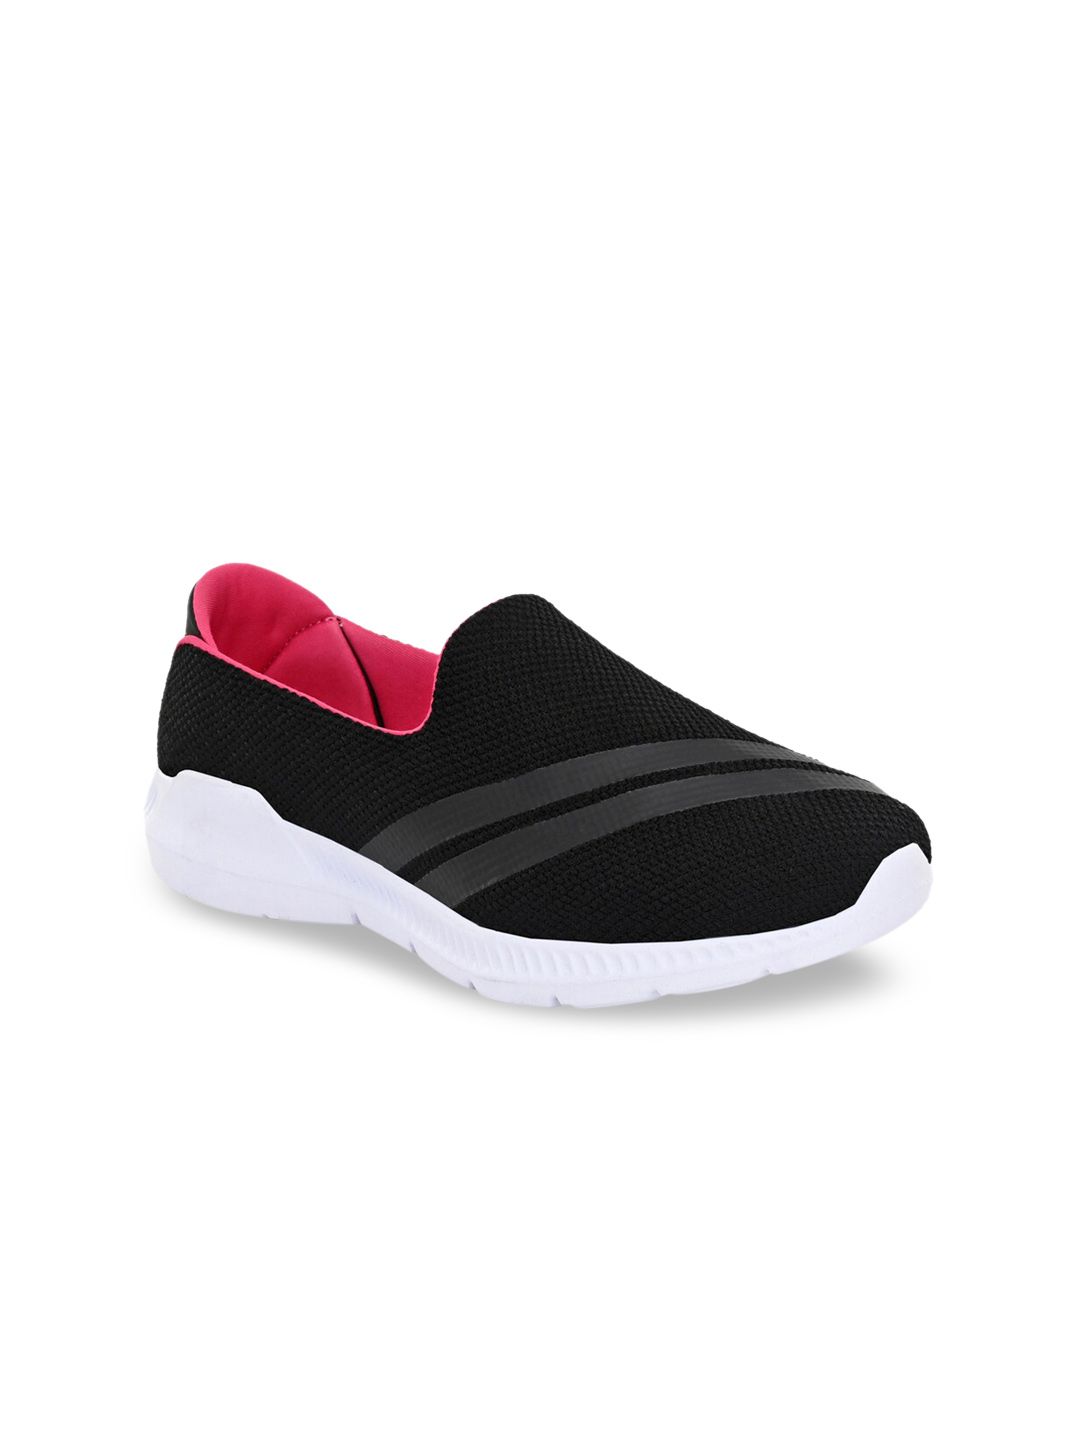 Yuuki Women Black Mesh Walking Shoes HAZEL 2.0 Price in India